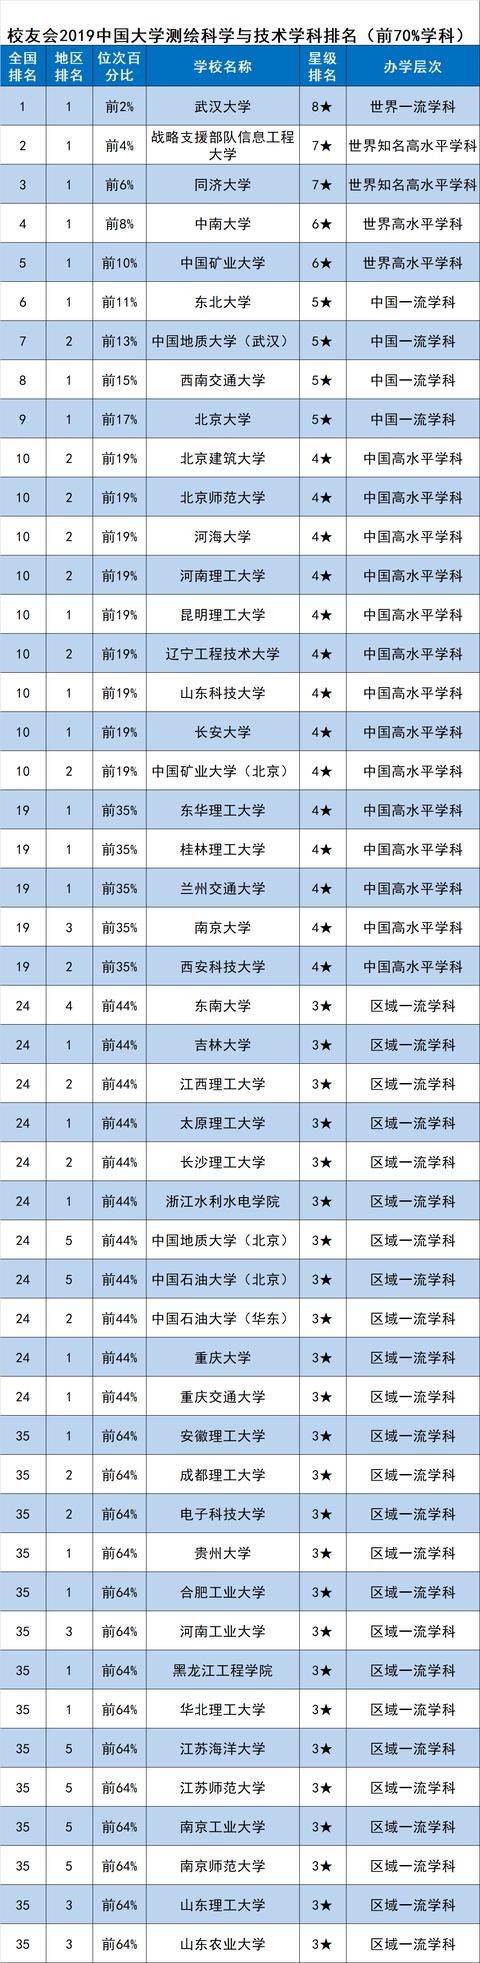 校友会2019中国一流学科排名-测绘科学与技术排名，武汉大学第一